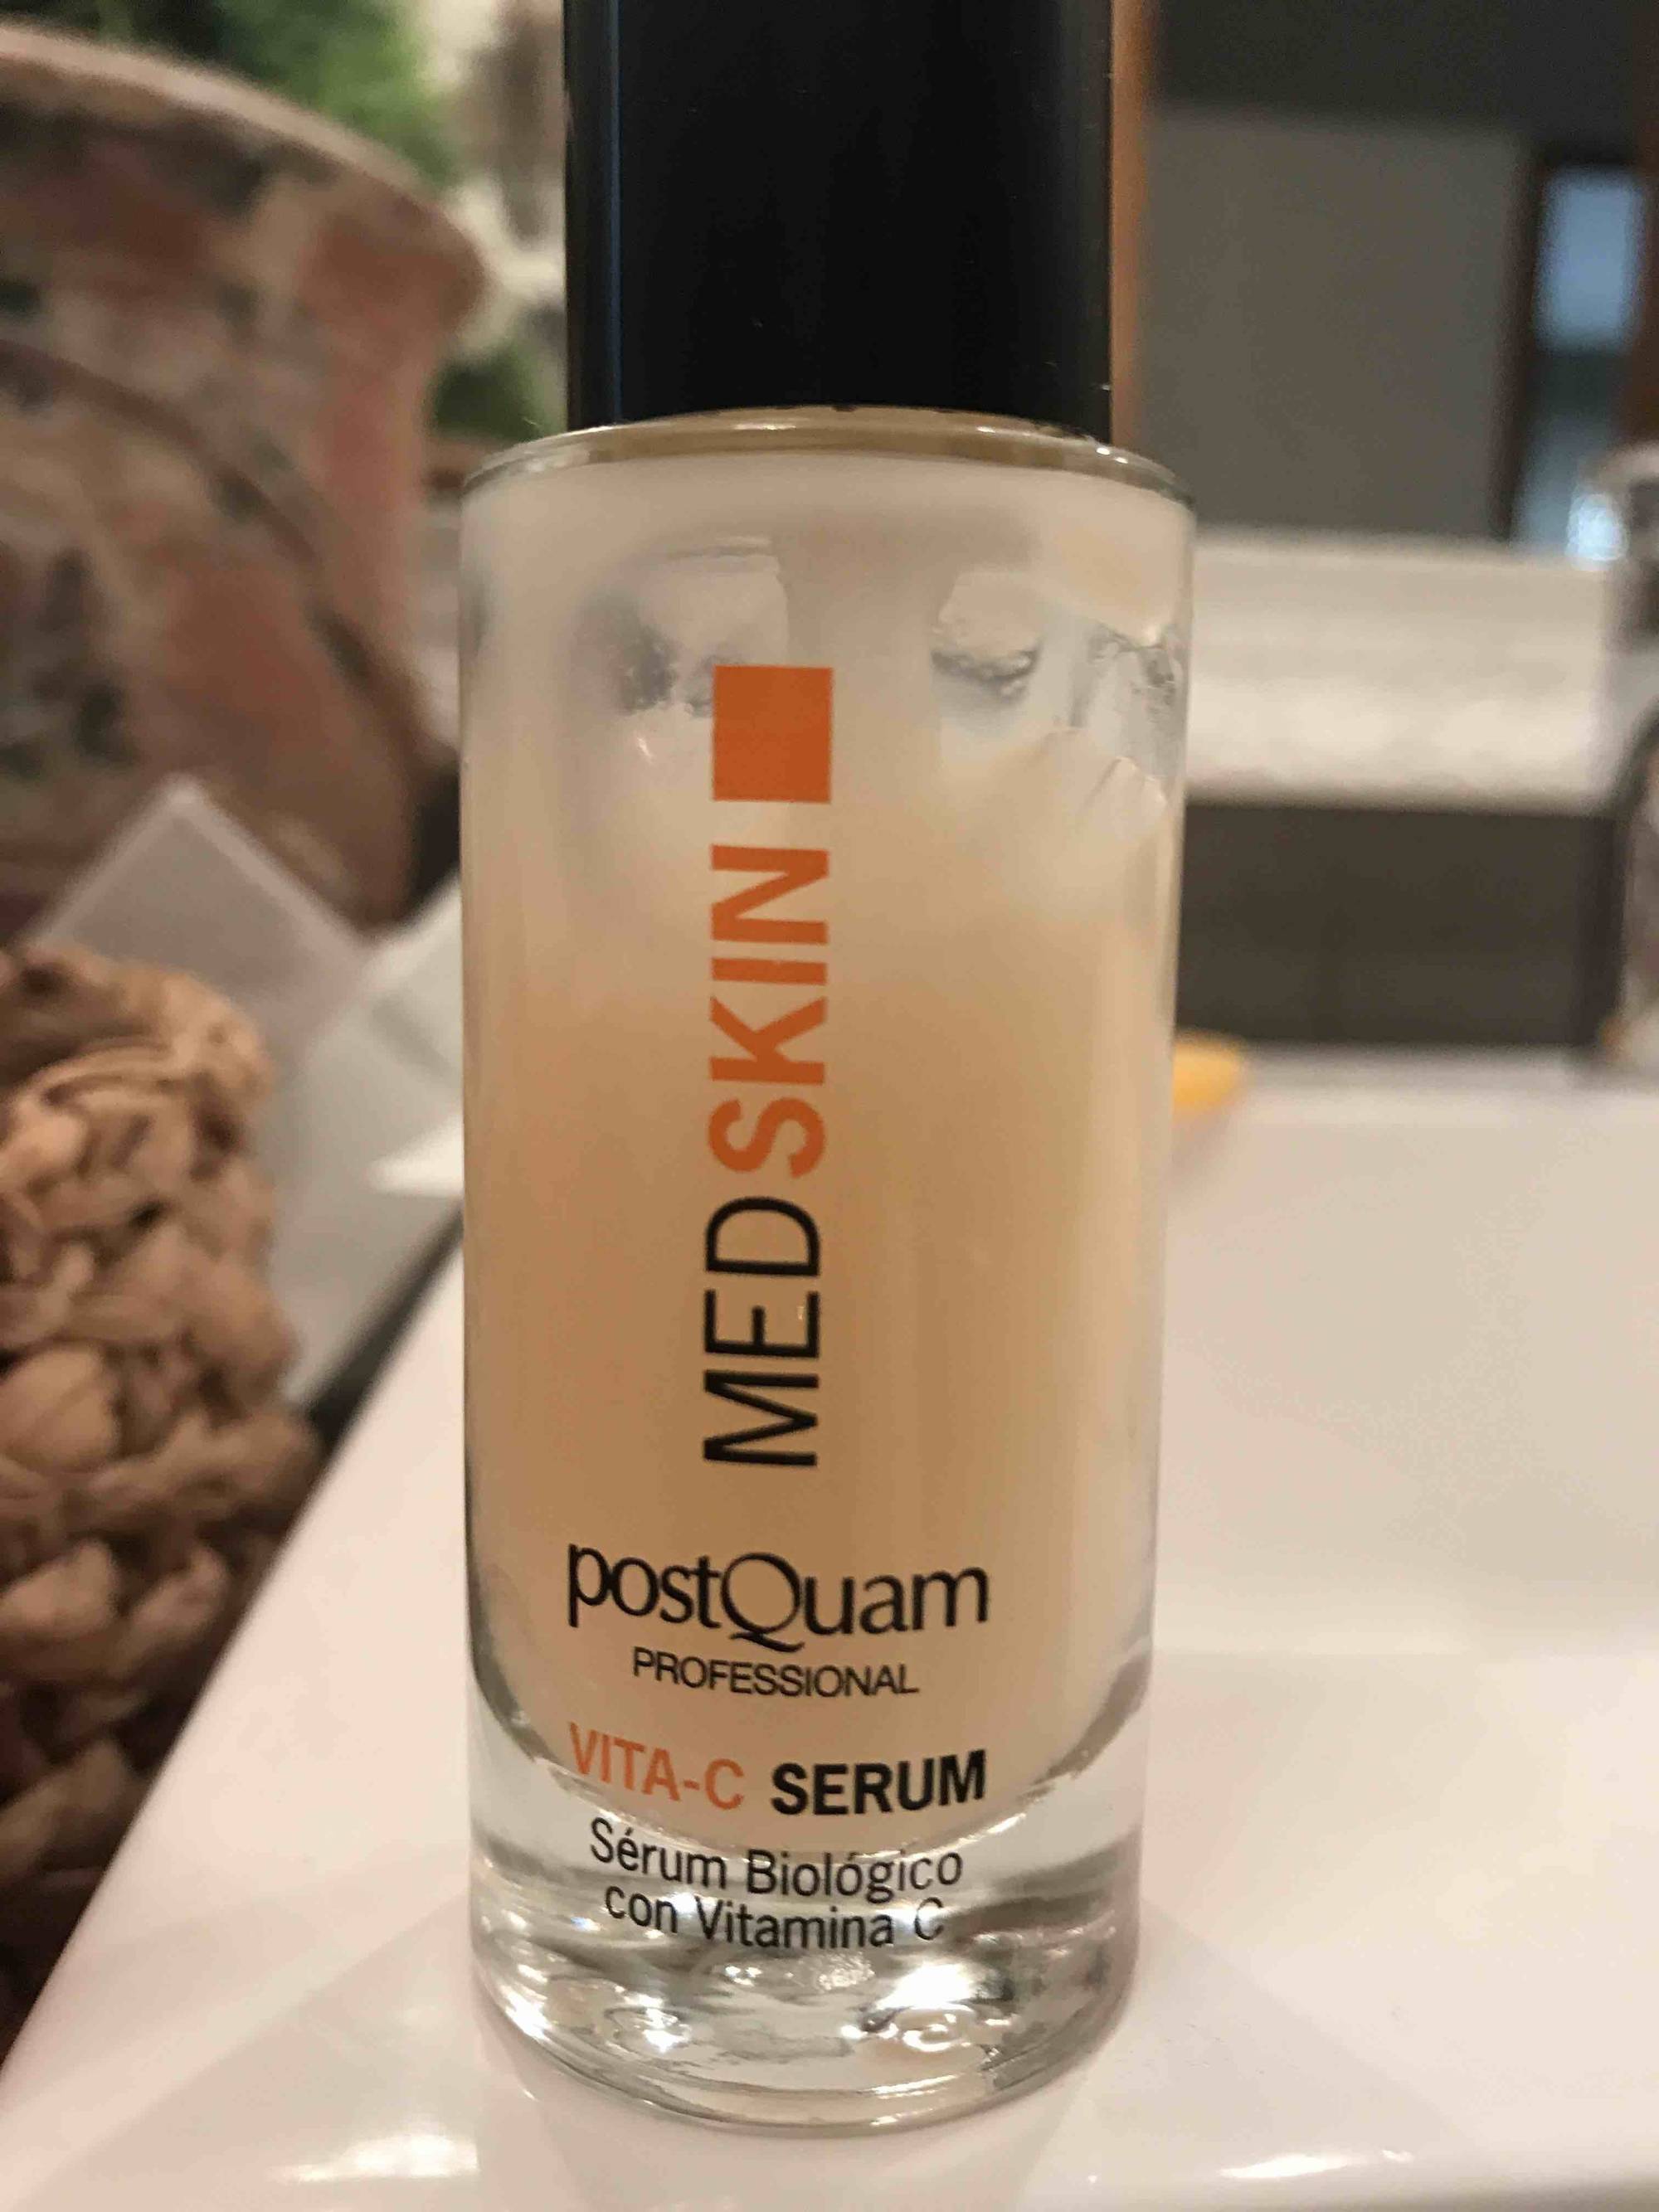 POSTQUAM - Med skin - Vita-C serum